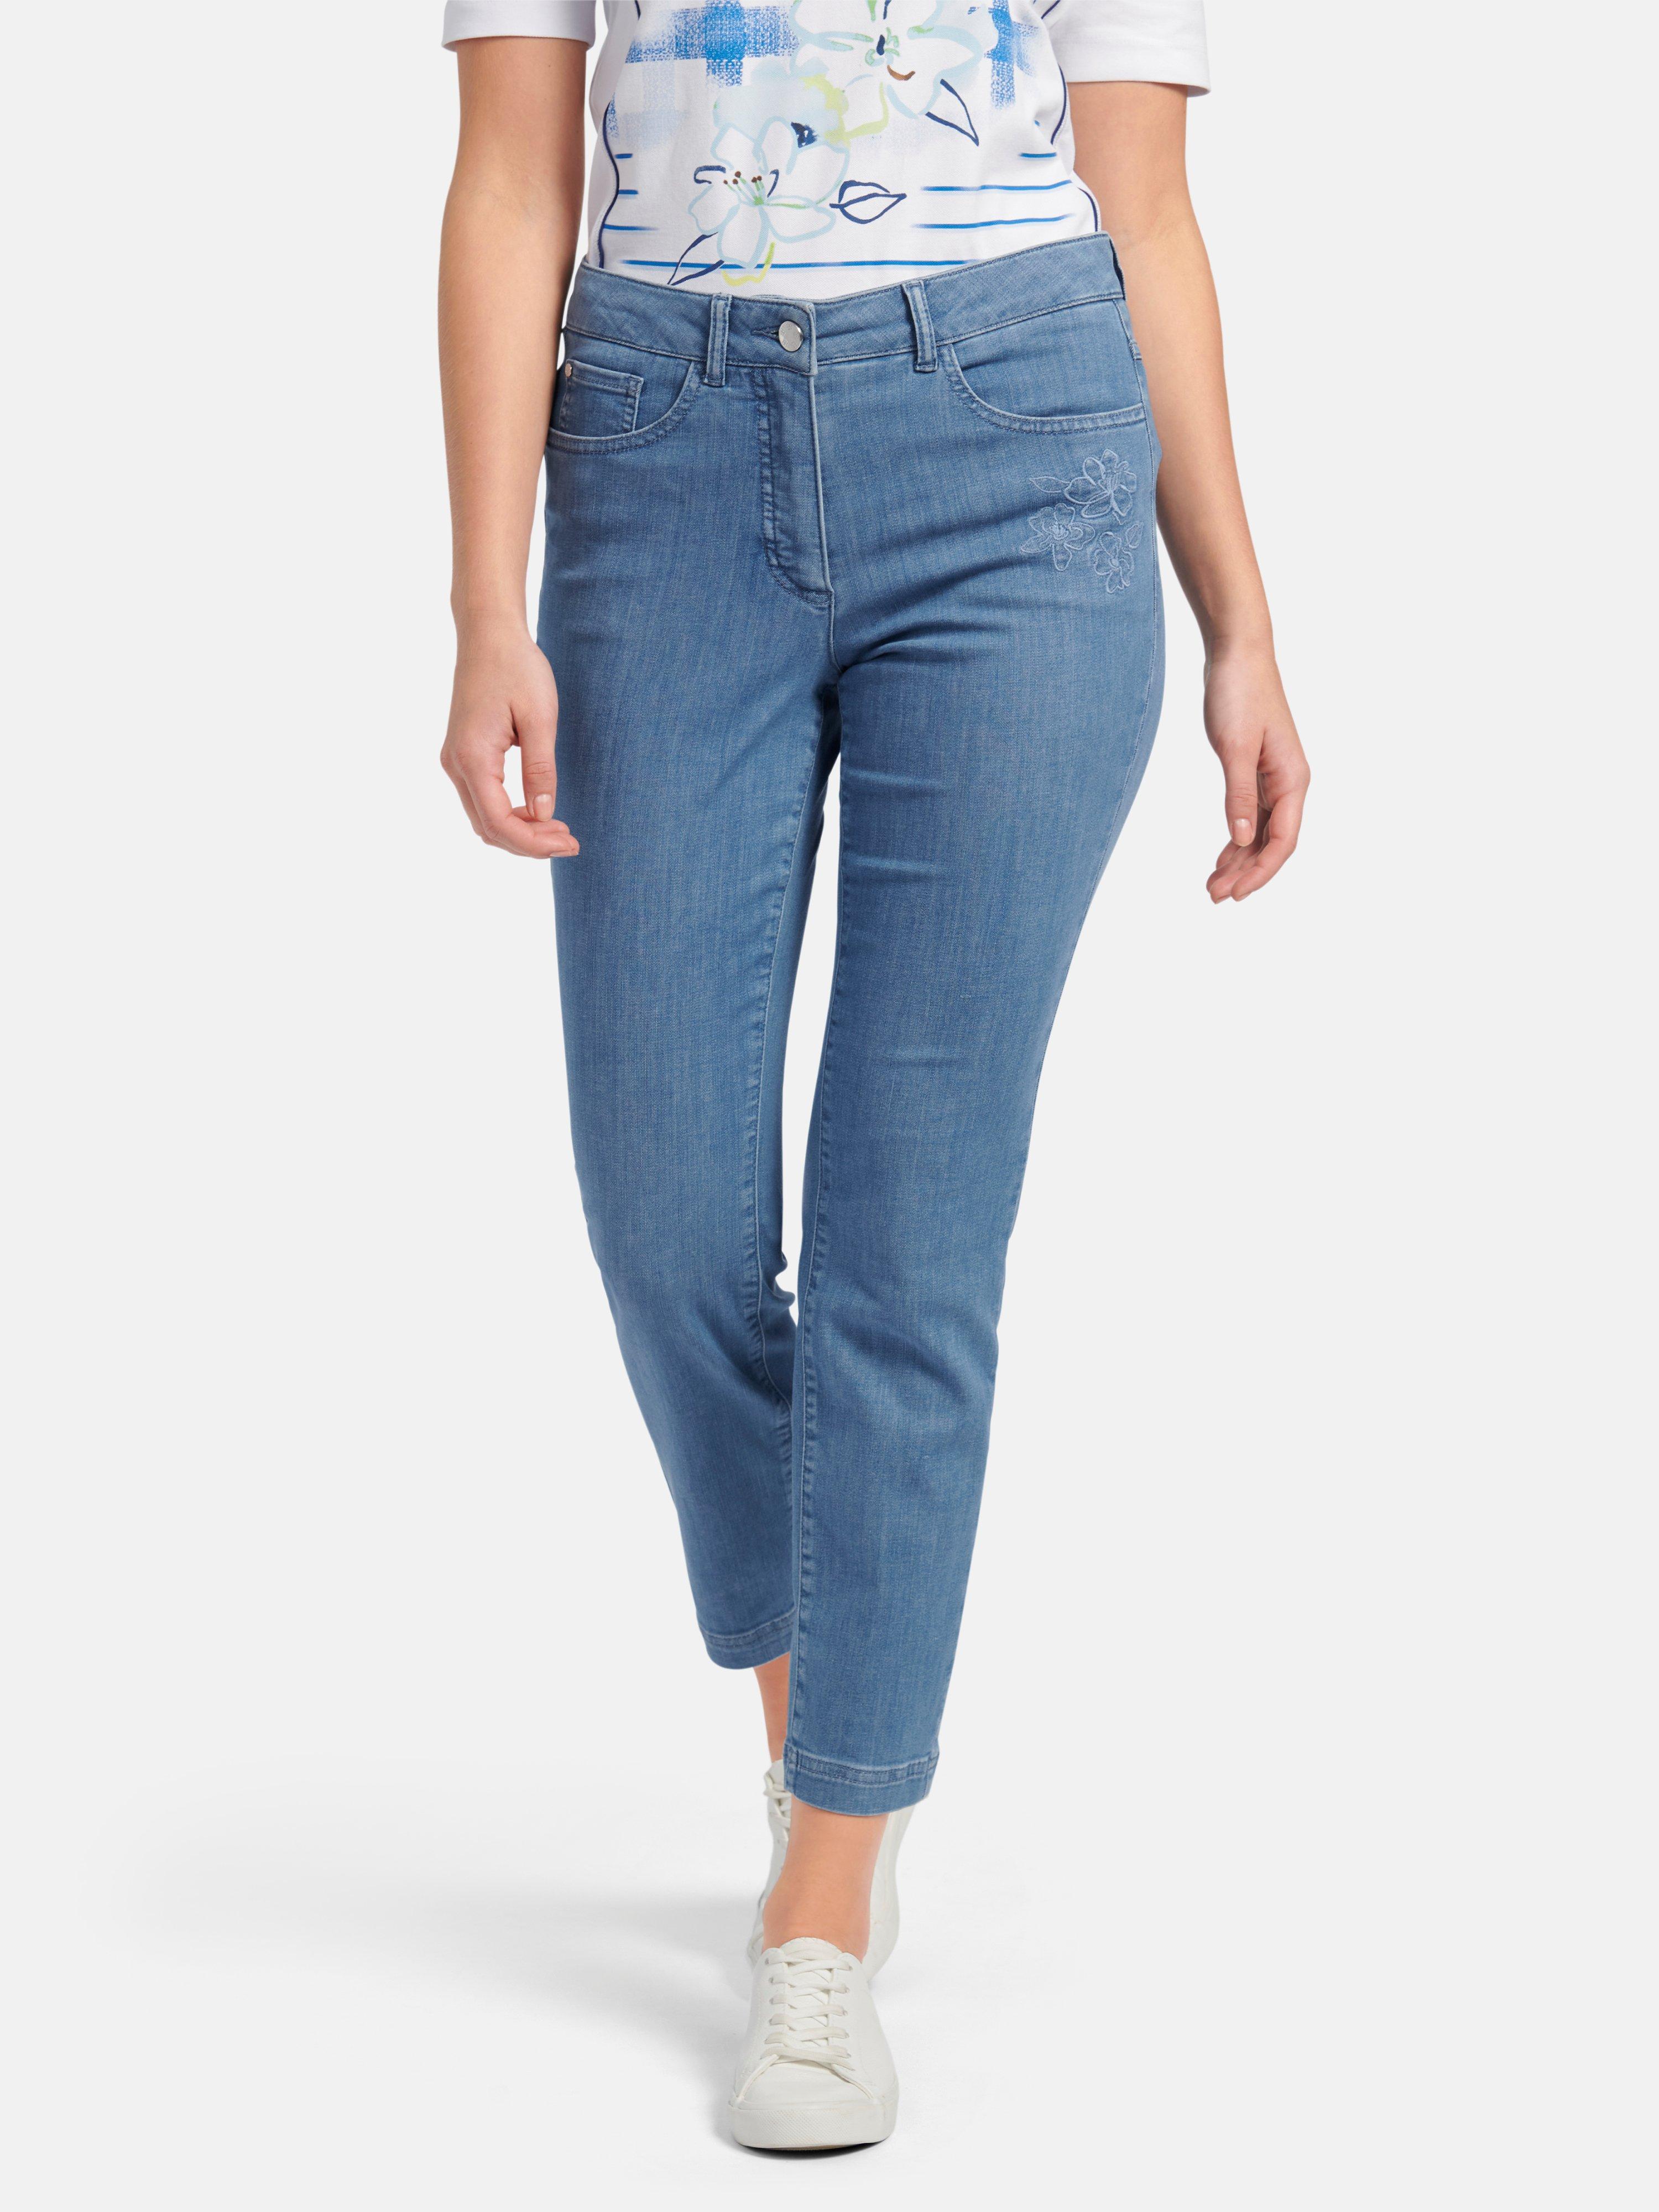 Basler - Ankle-length jeans design Julienne - bleached denim